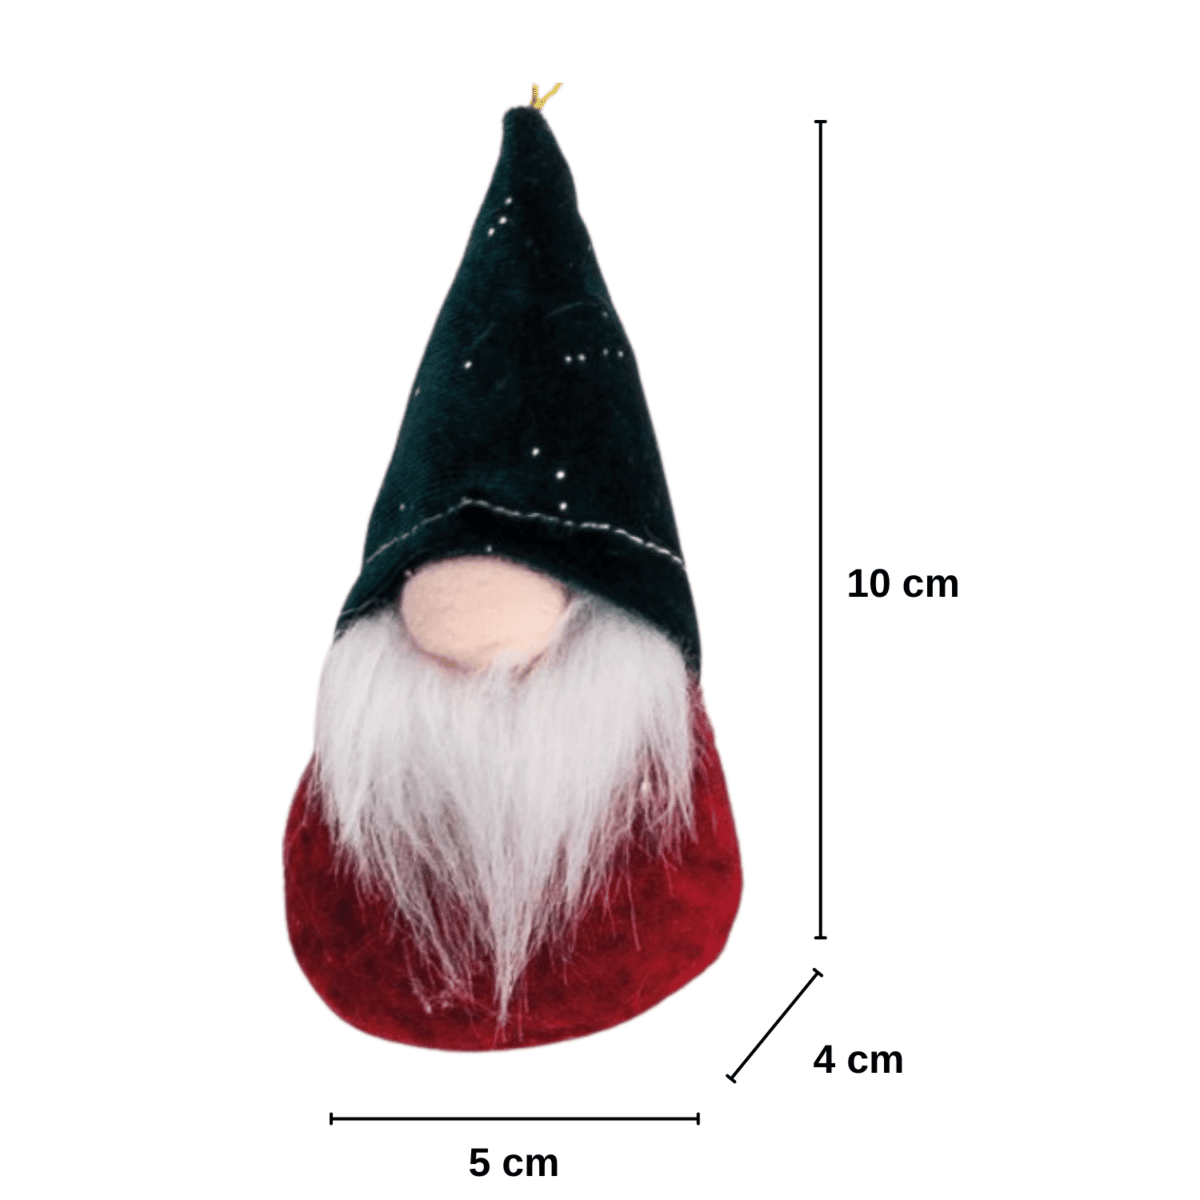 gnomo-mini-combriccola-10-cm-elfi-gnomi-pupazzi-natale-decorazioni-natalie-feltro-tirolese-dettaglio-misure